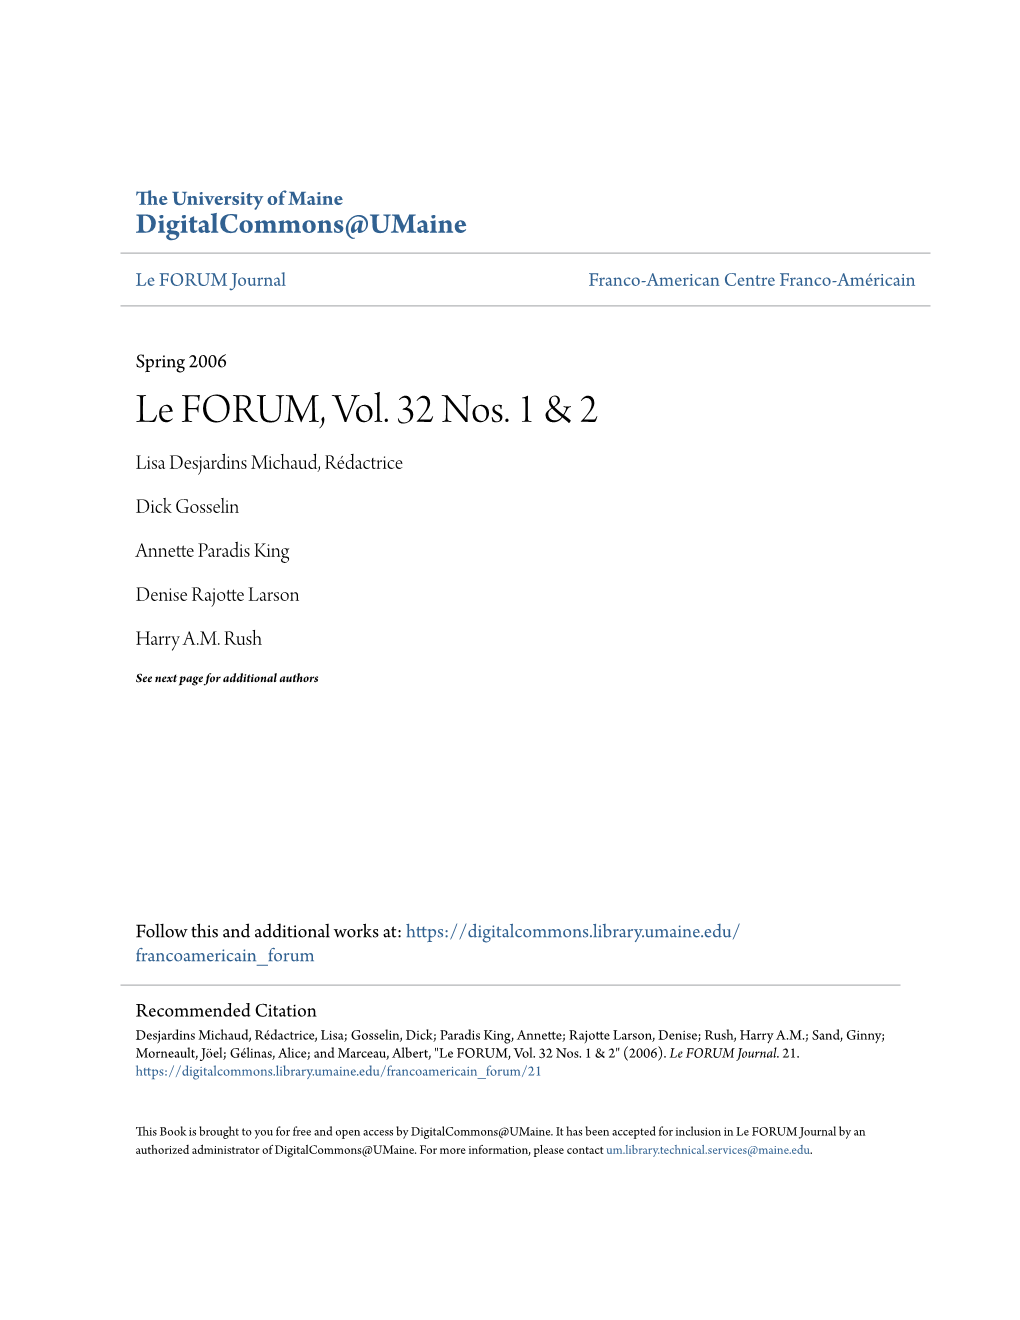 Le FORUM, Vol. 32 Nos. 1 & 2